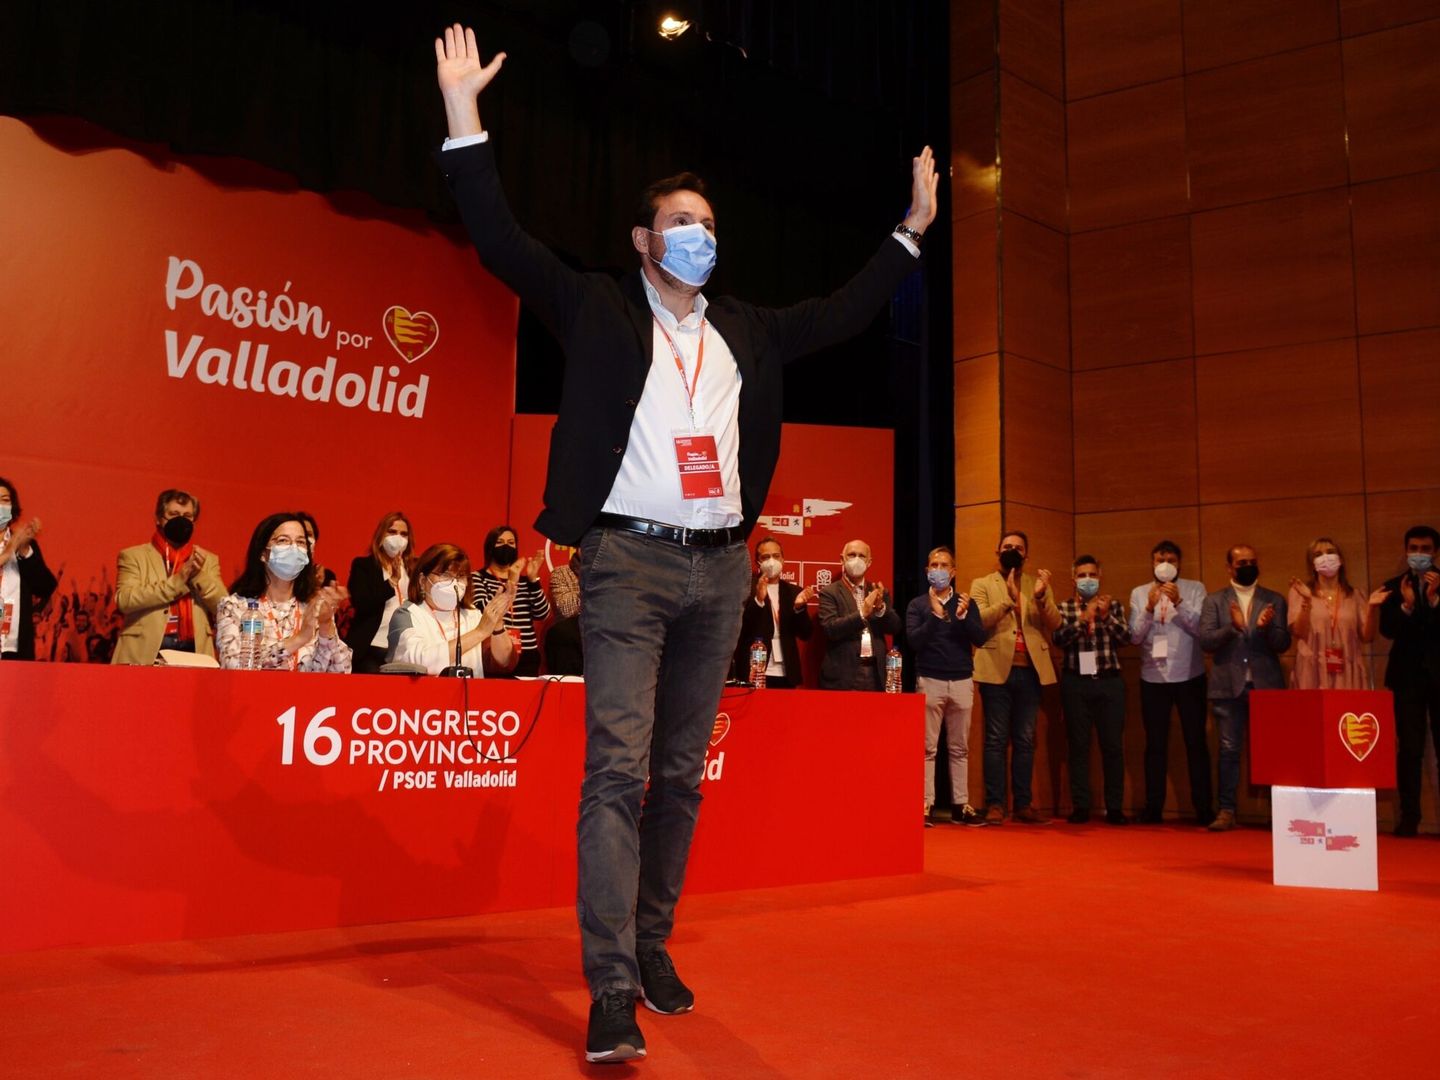 El alcalde de Valladolid, Óscar Puente, en el congreso provincial del PSOE de la ciudad. (EFE/Nacho Gallego)